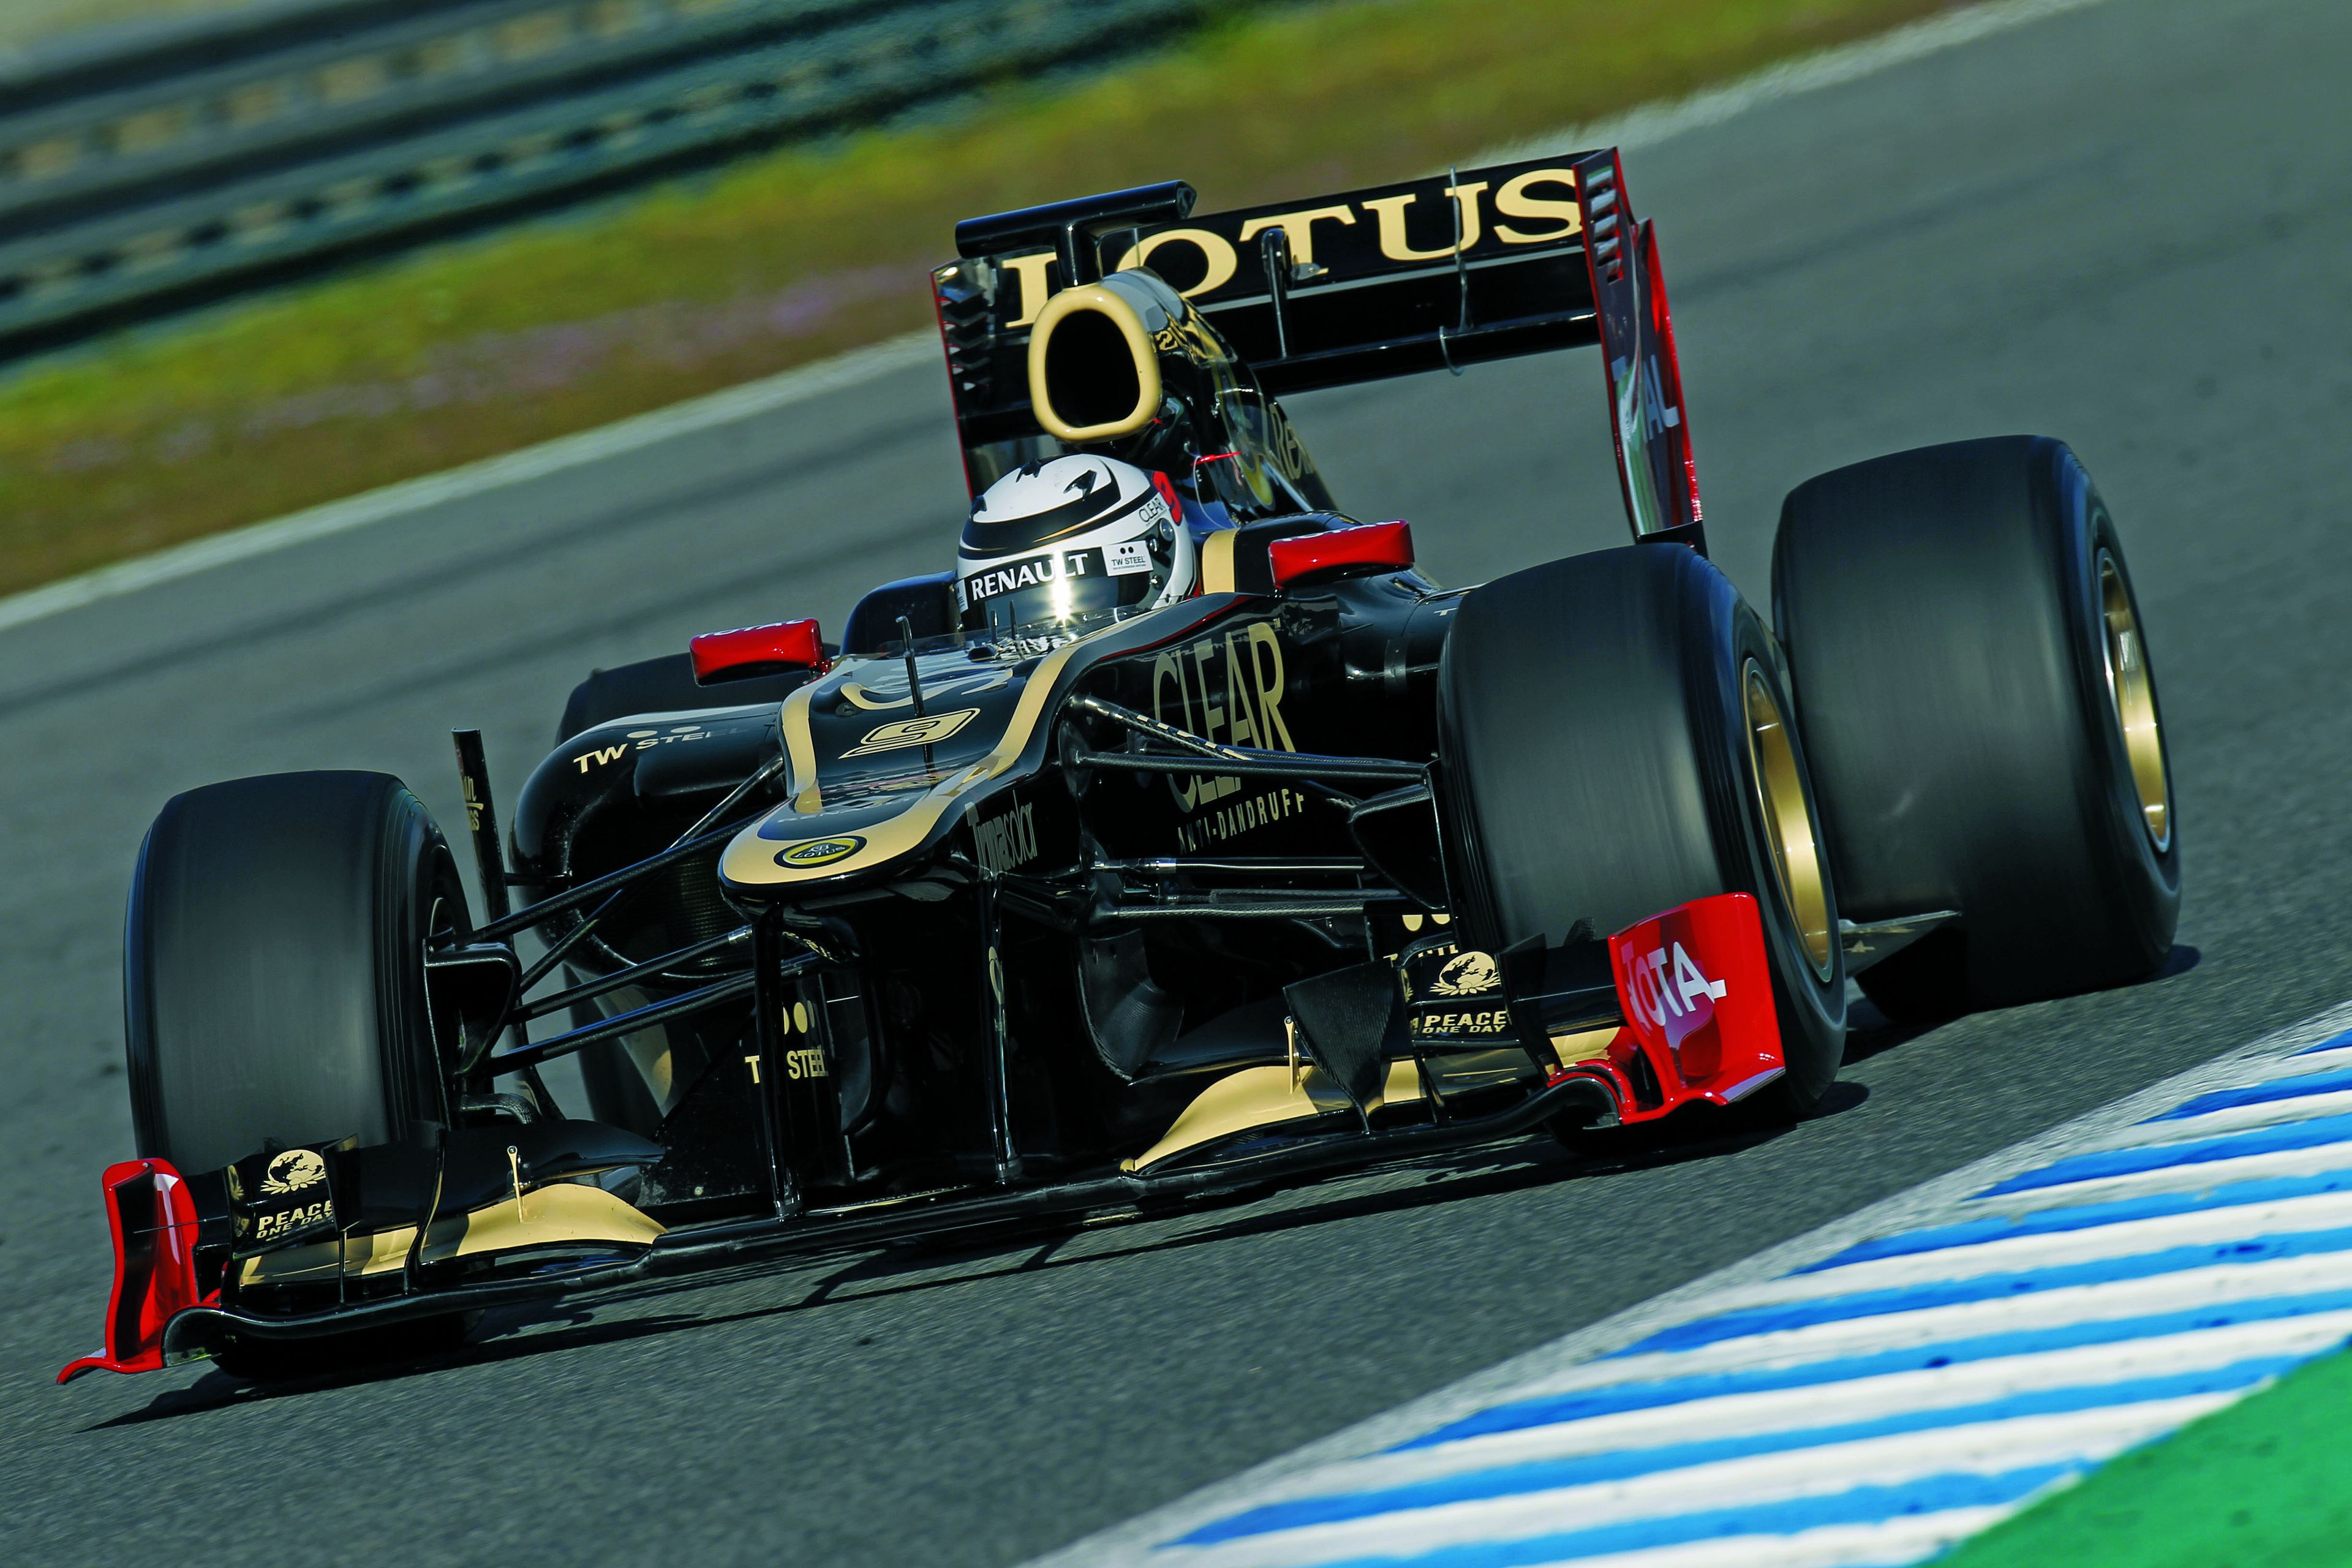 Kimi Räikkönen - Lotus F1 Team - 2012